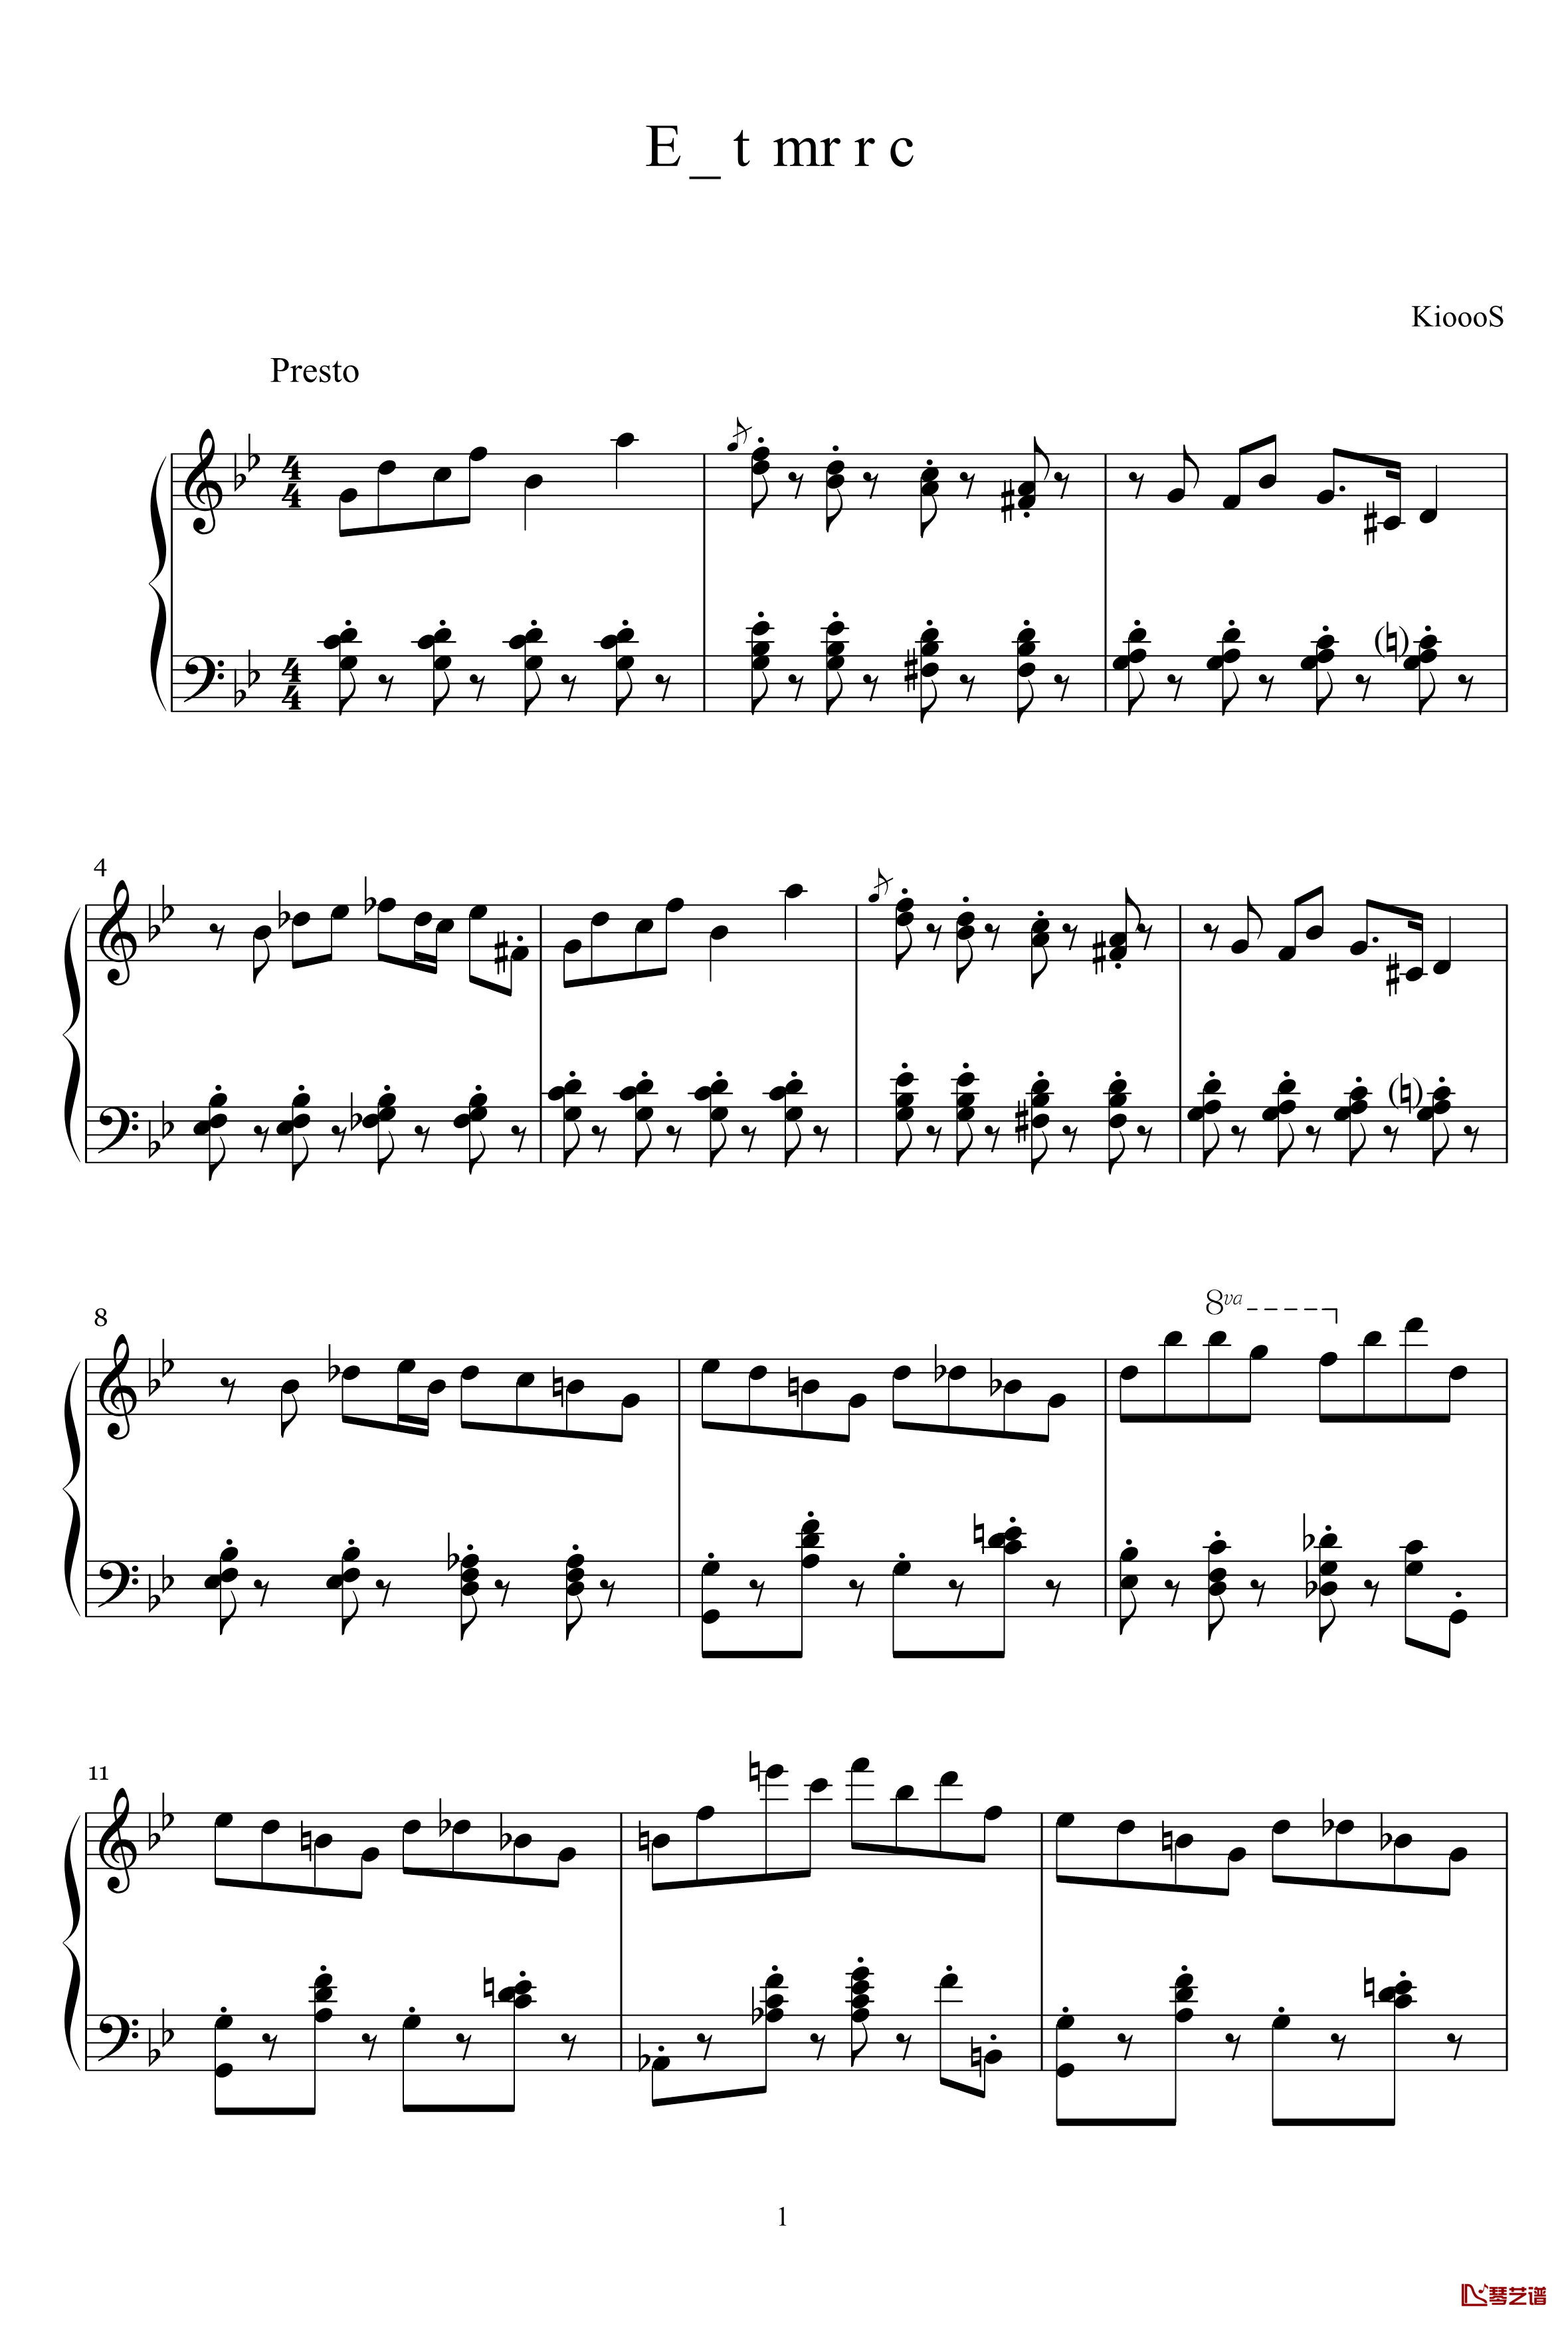 加伏特舞曲钢琴谱-KioooS1